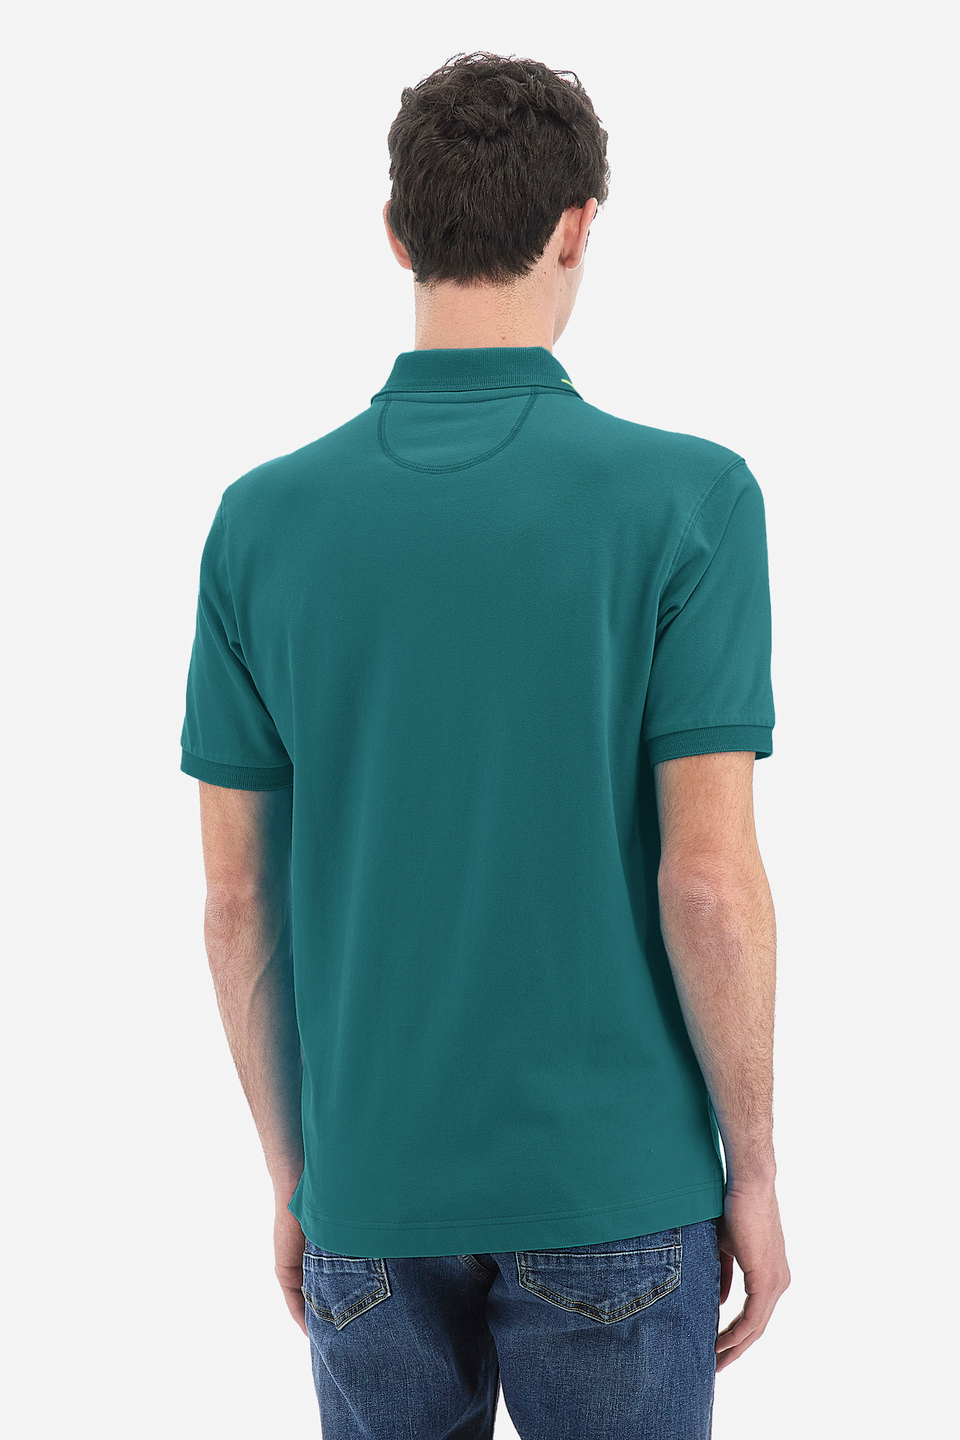 Herren-Kurzarm-Poloshirt aus Stretch-Baumwolle mit normaler Passform - Valene | La Martina - Official Online Shop